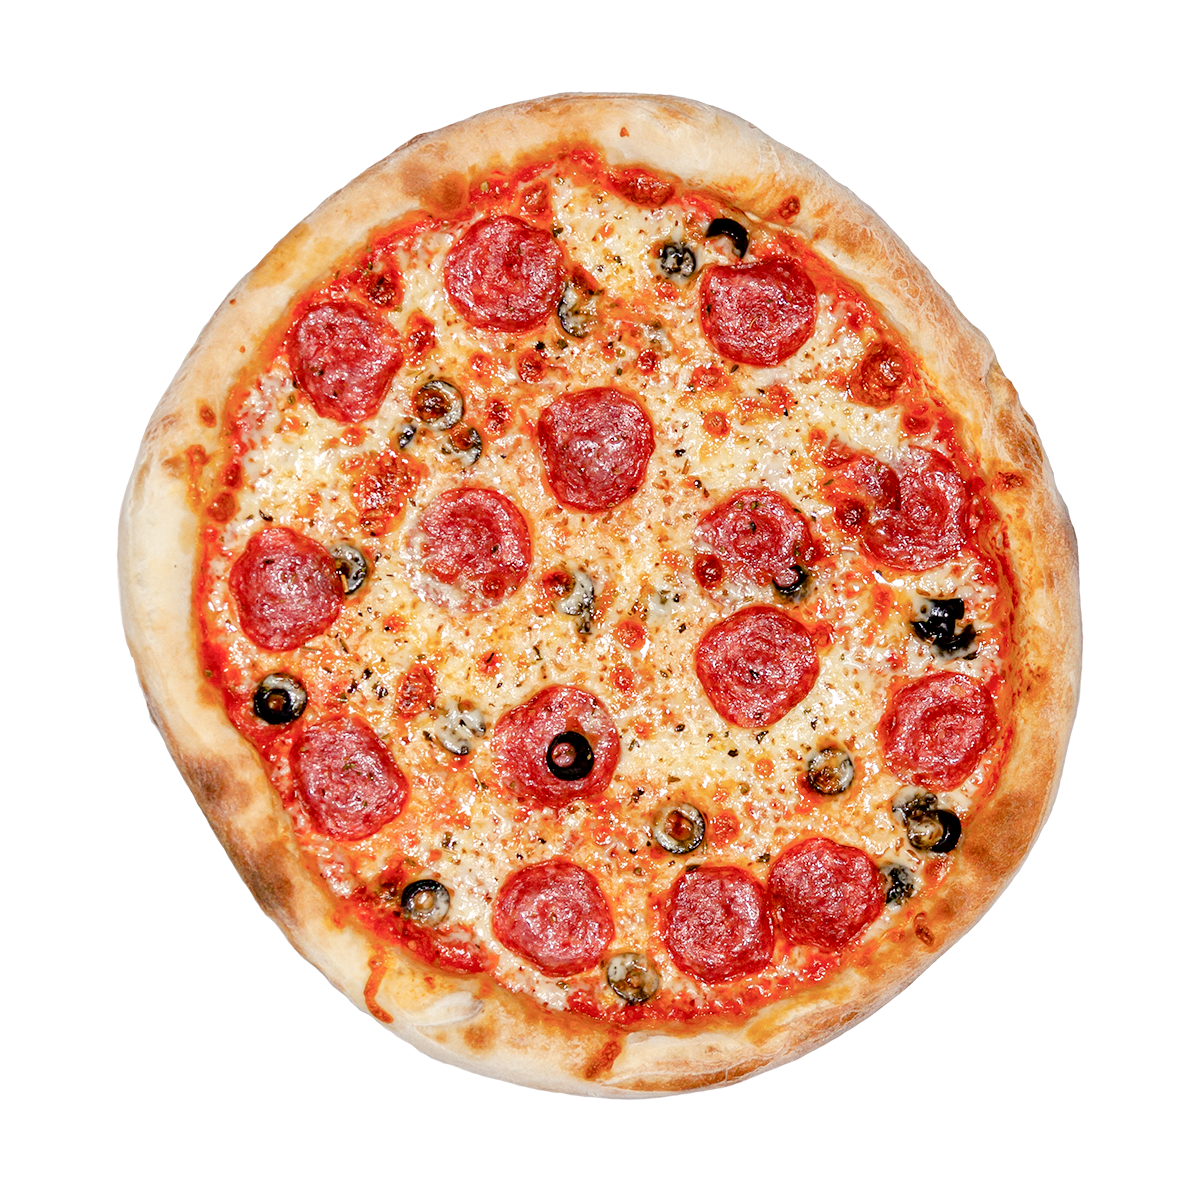 я хочу пиццу с перцем луком пепперони и оливками фото 73